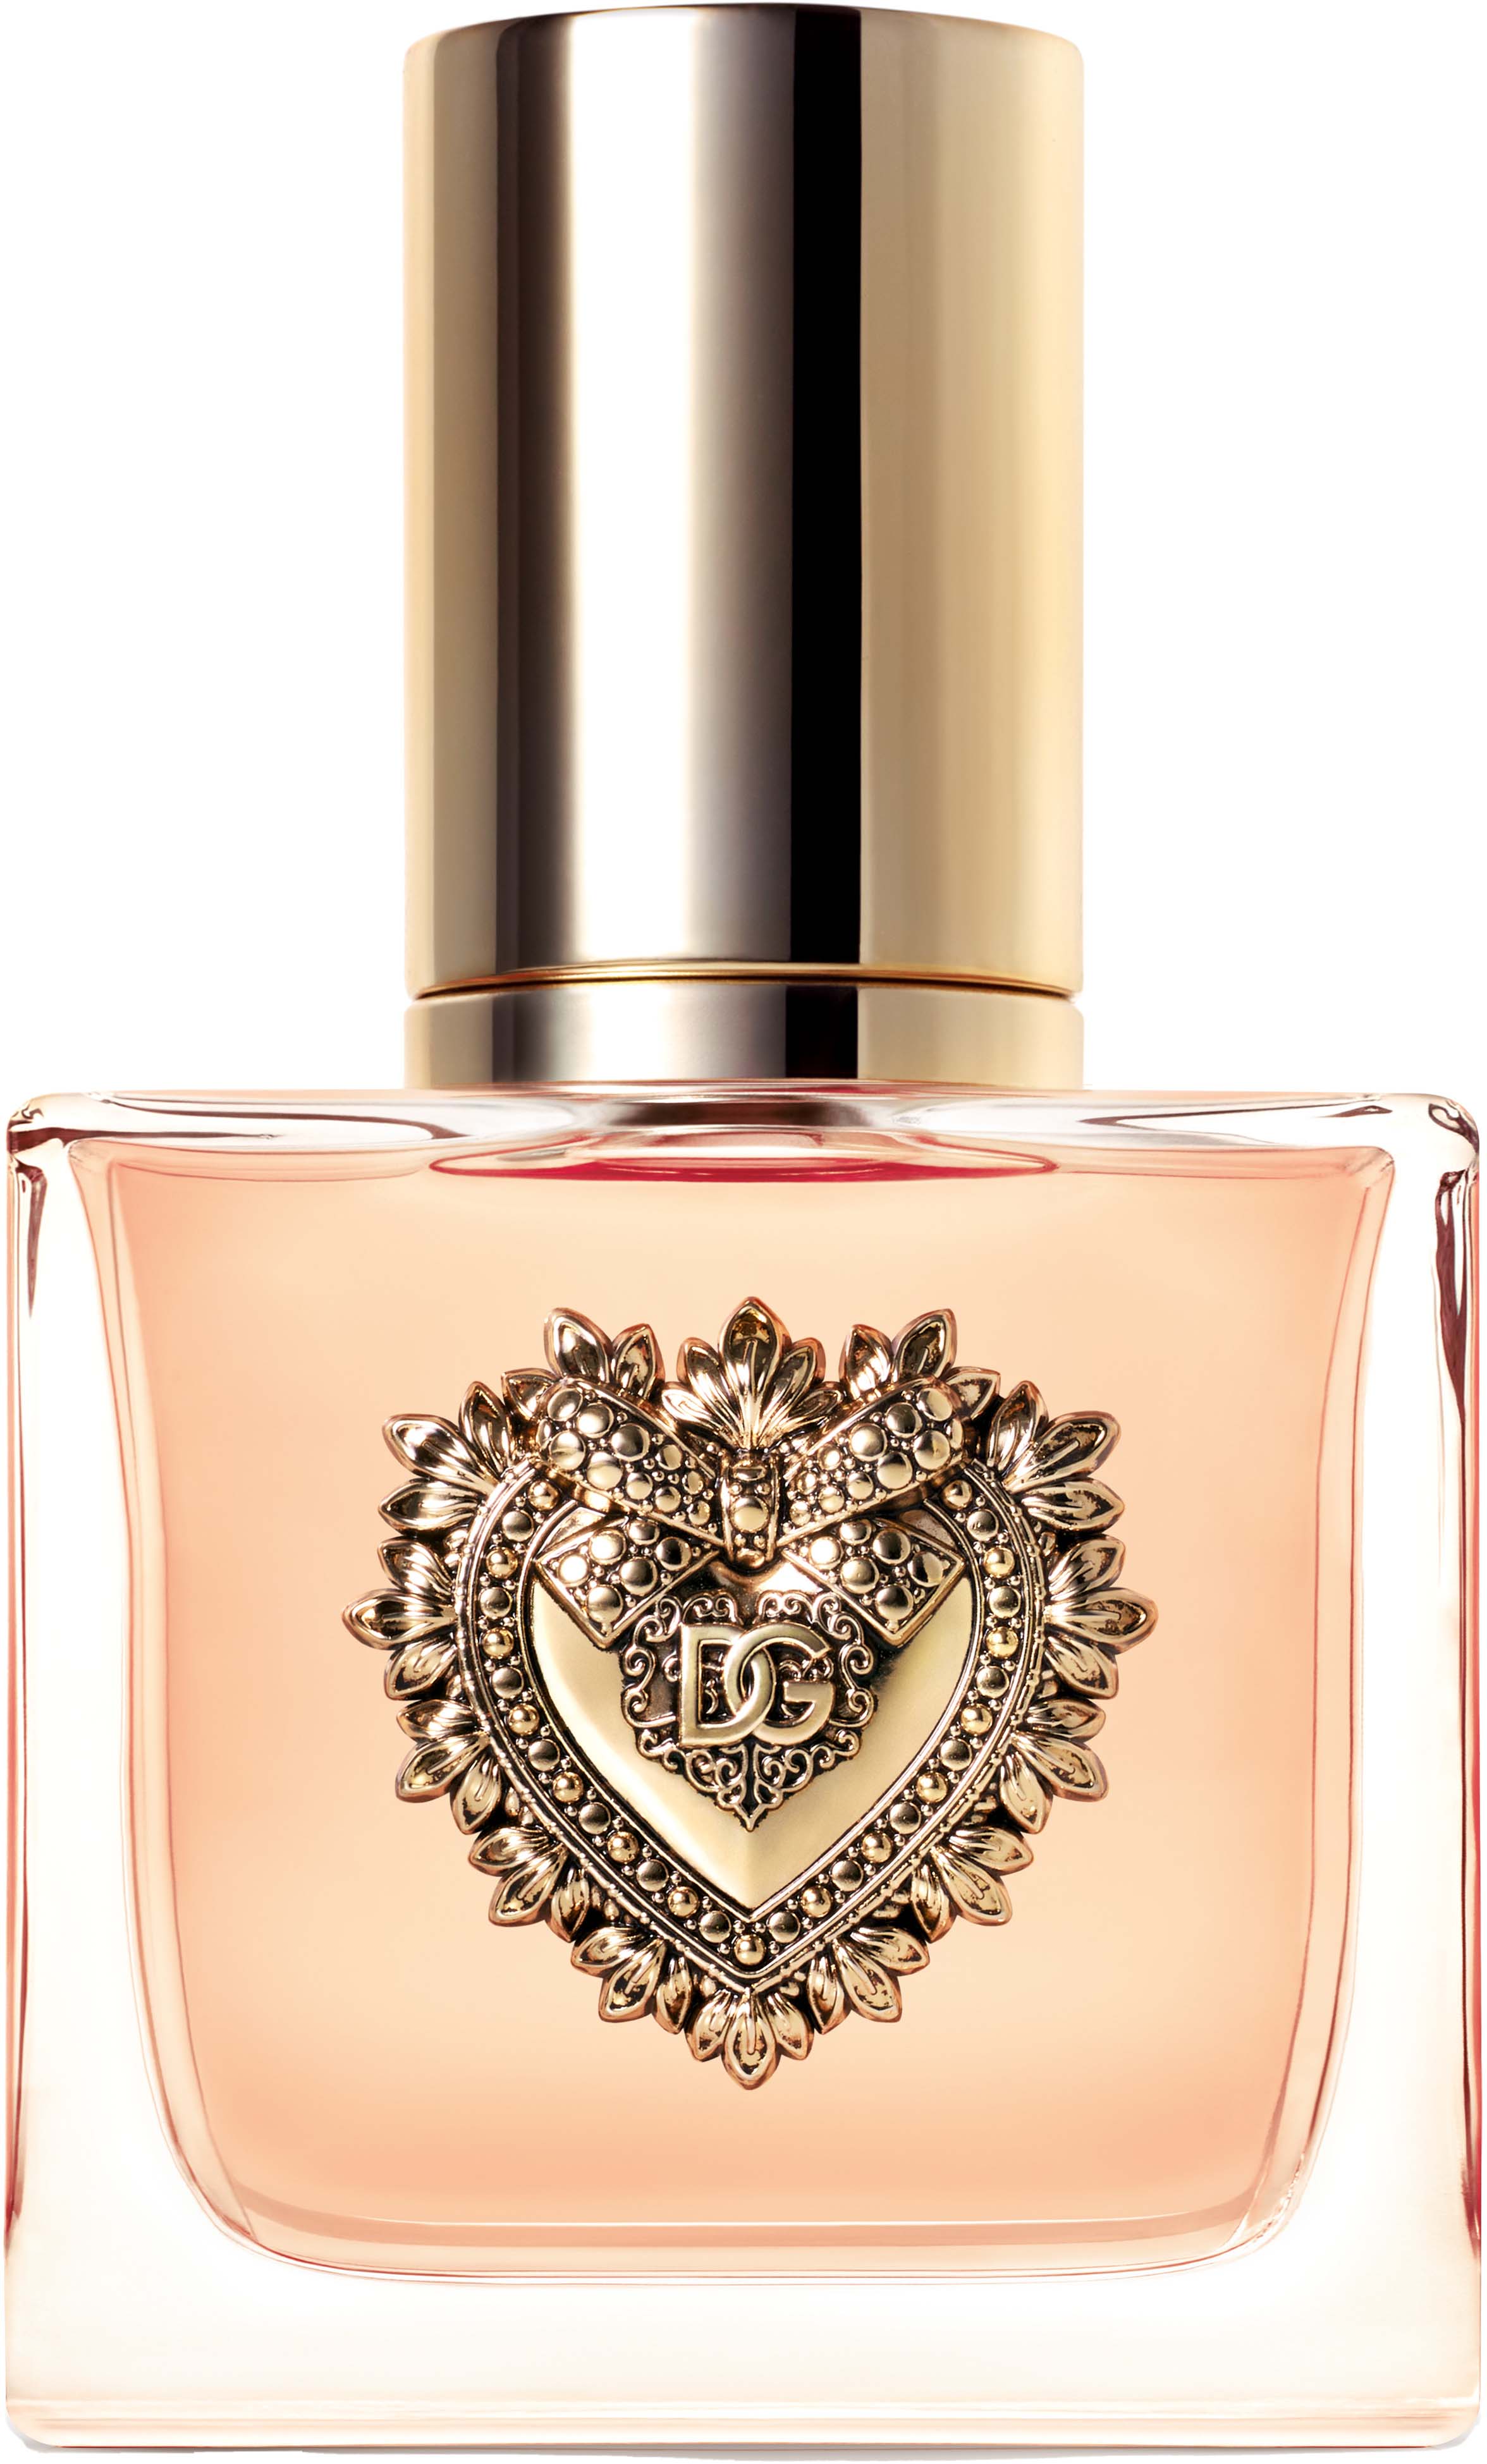 https://lyko.com/globalassets/product-images/dolcegabbana-devotion-eau-de-parfum-30-ml-1024-405-0030_1.jpg?ref=9F582A76DD